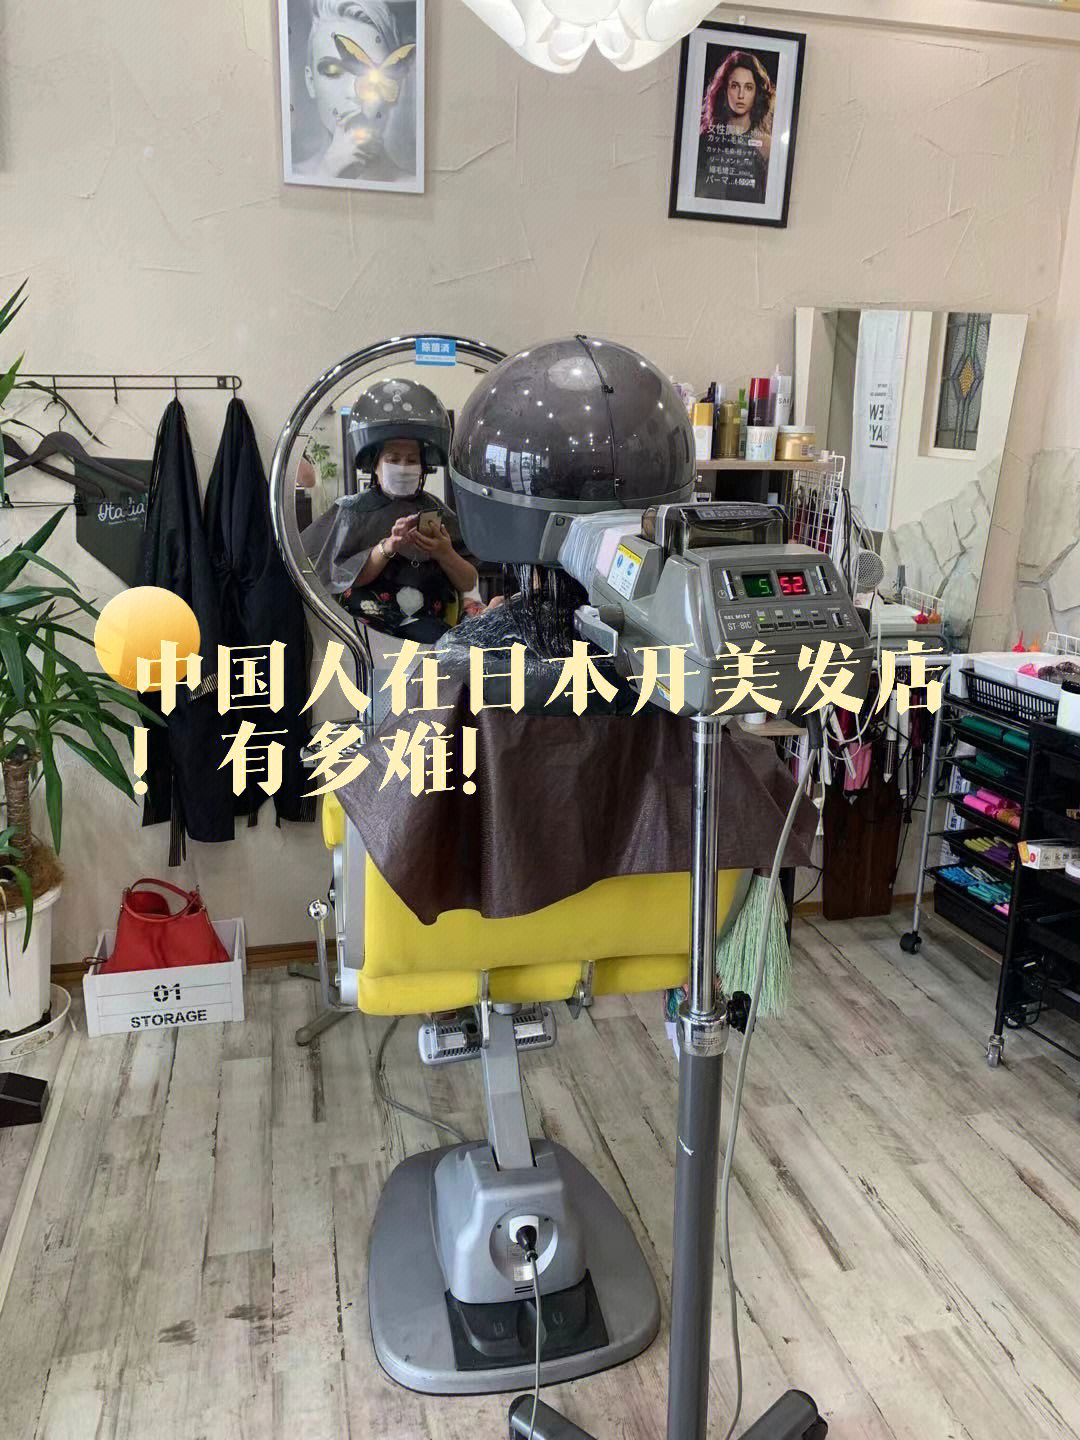 中国人在日本开美发店